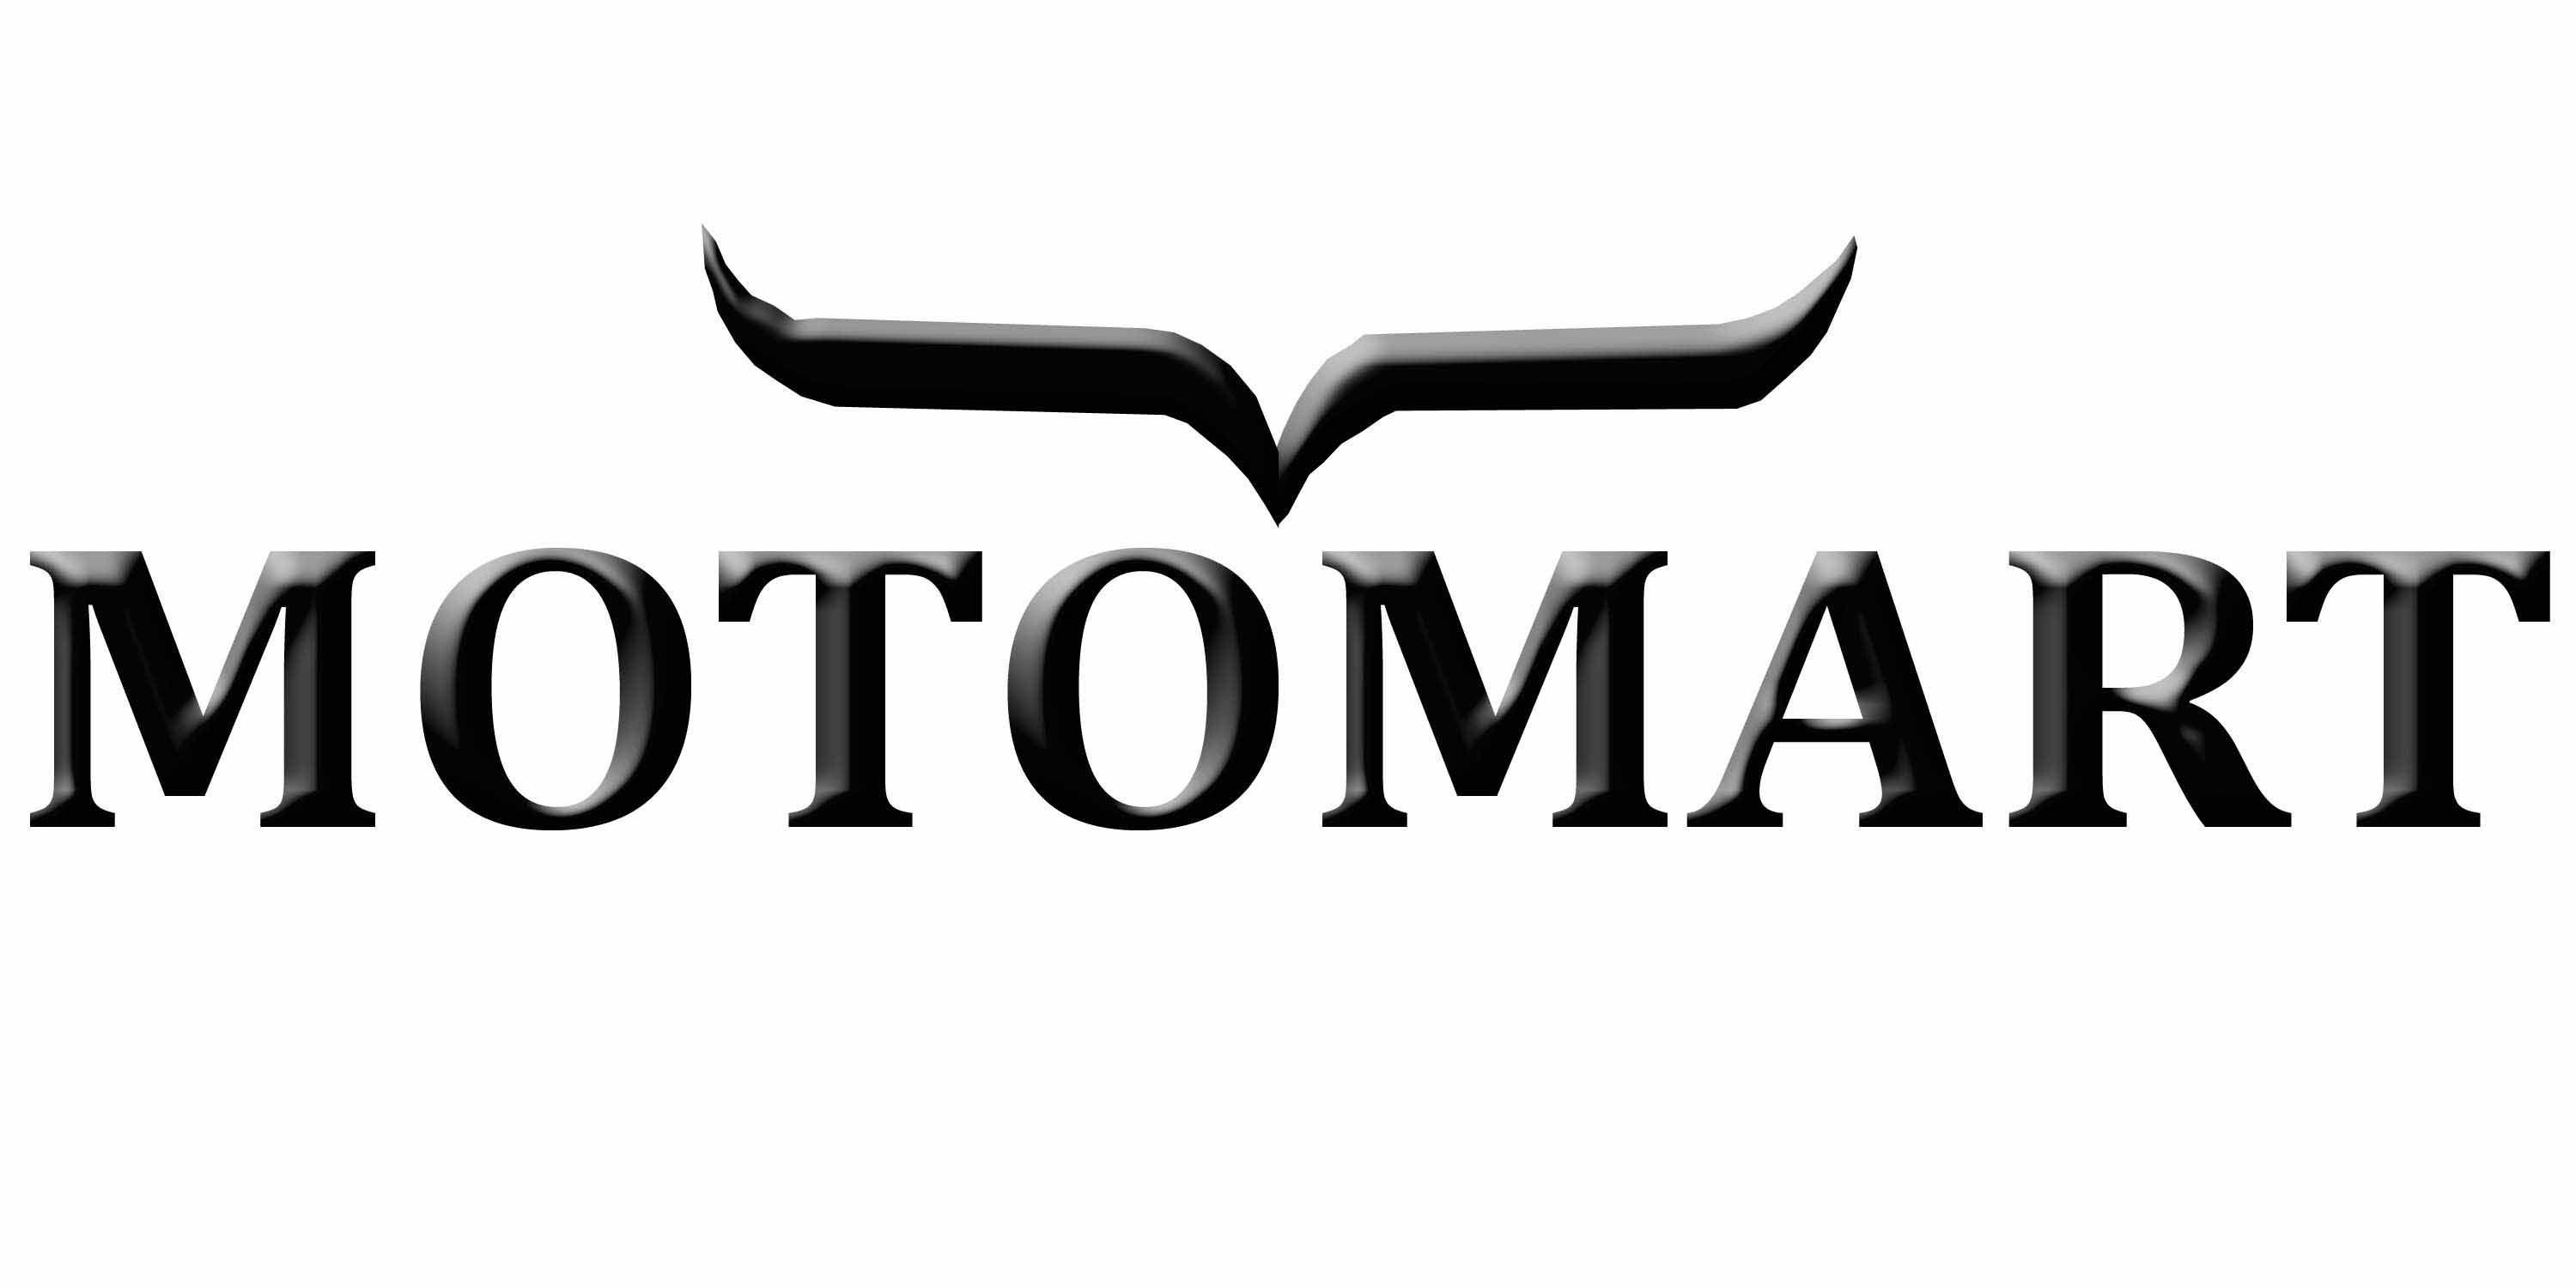 Motomart Logo - 4. Store | Motomart